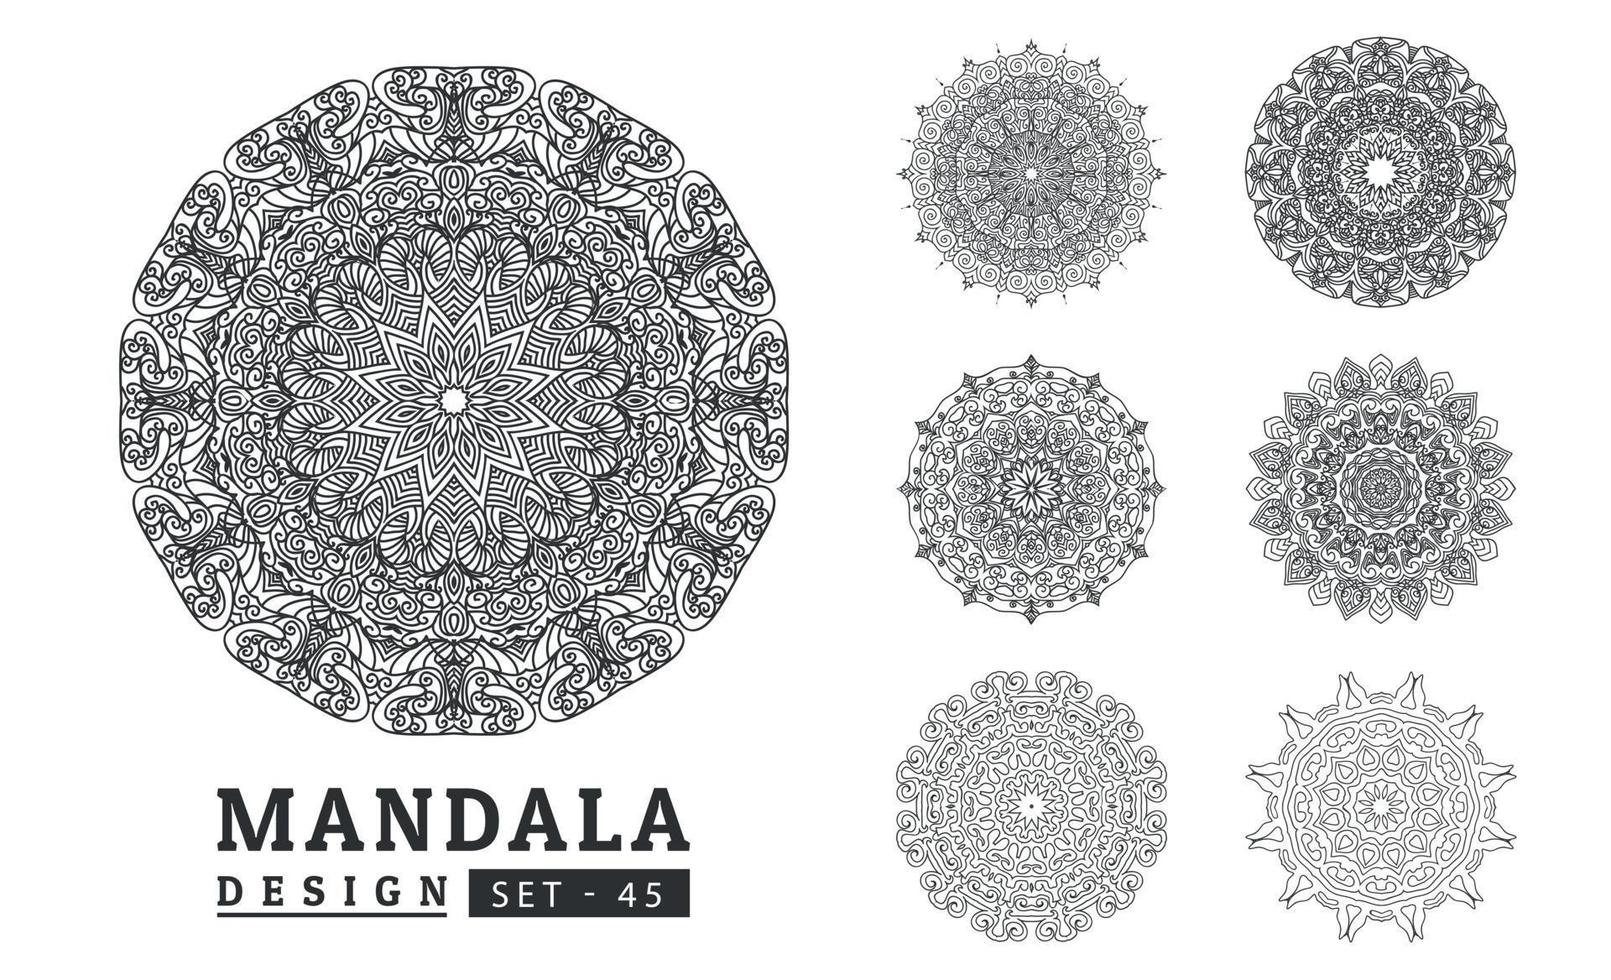 Black and white flower mandala designs set. New mandala art vector illustration